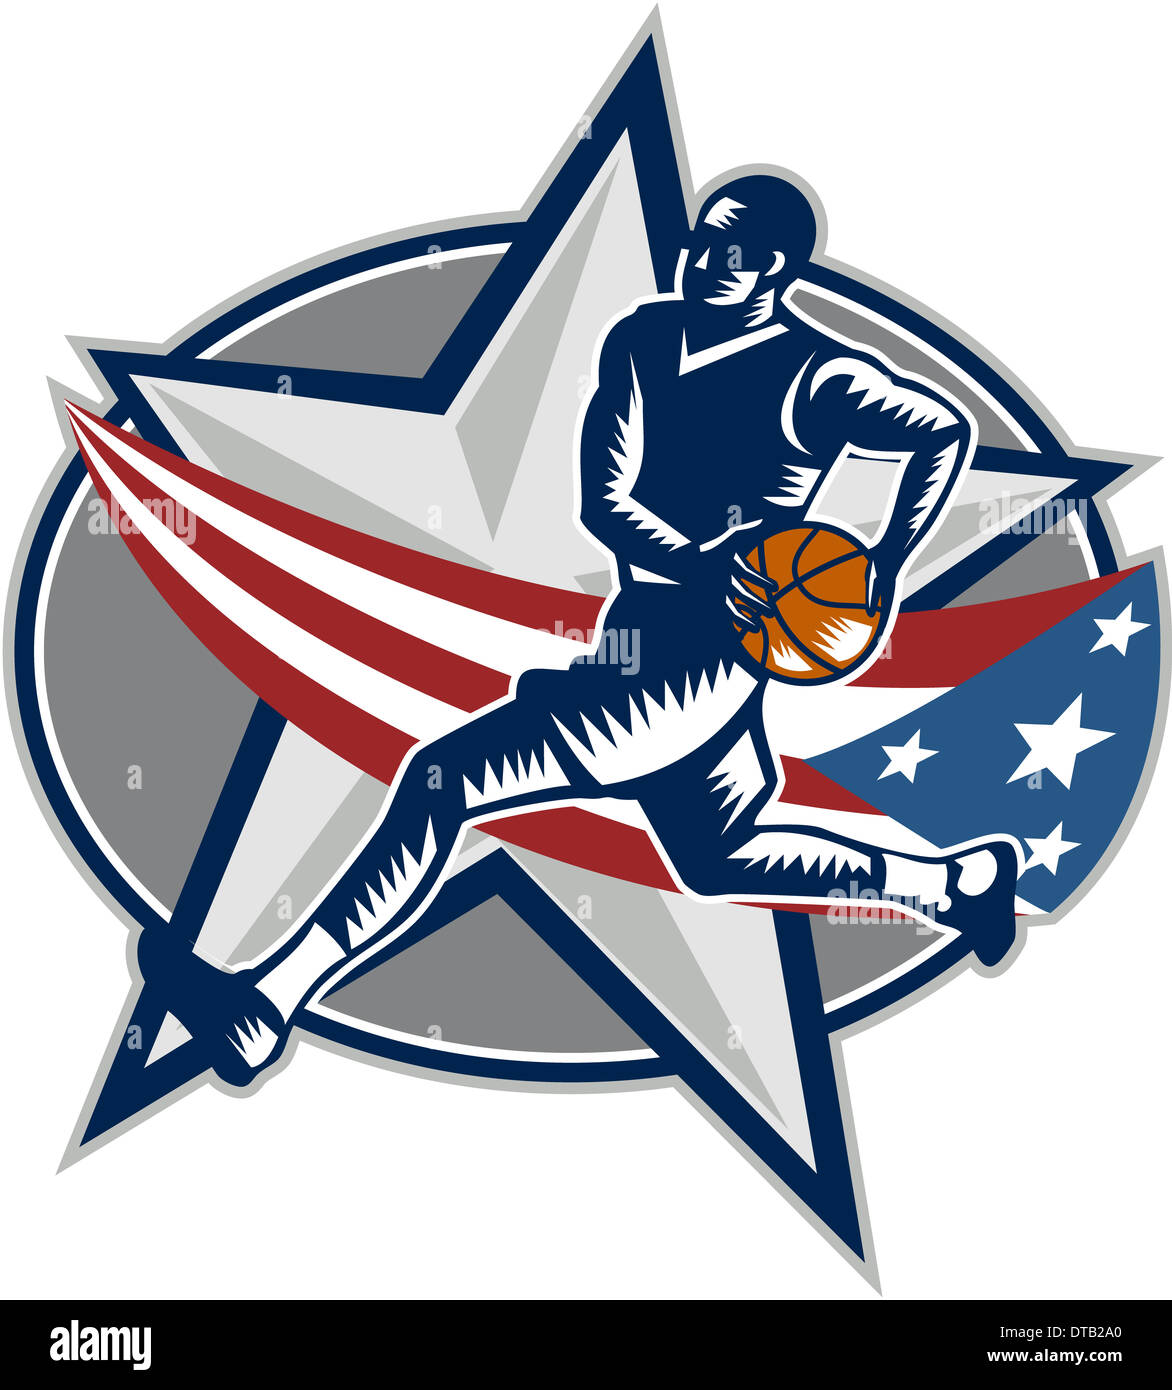 Beispiel für ein Basketball-Spieler mit Ball auf eine schnelle Pause machen einen Lay-up oder dunk mit Sterne-amerikanische Sternenbanner Flagge auf isolierten weißen Hintergrund in Retro-Holzschnitt Stil getan. Stockfoto